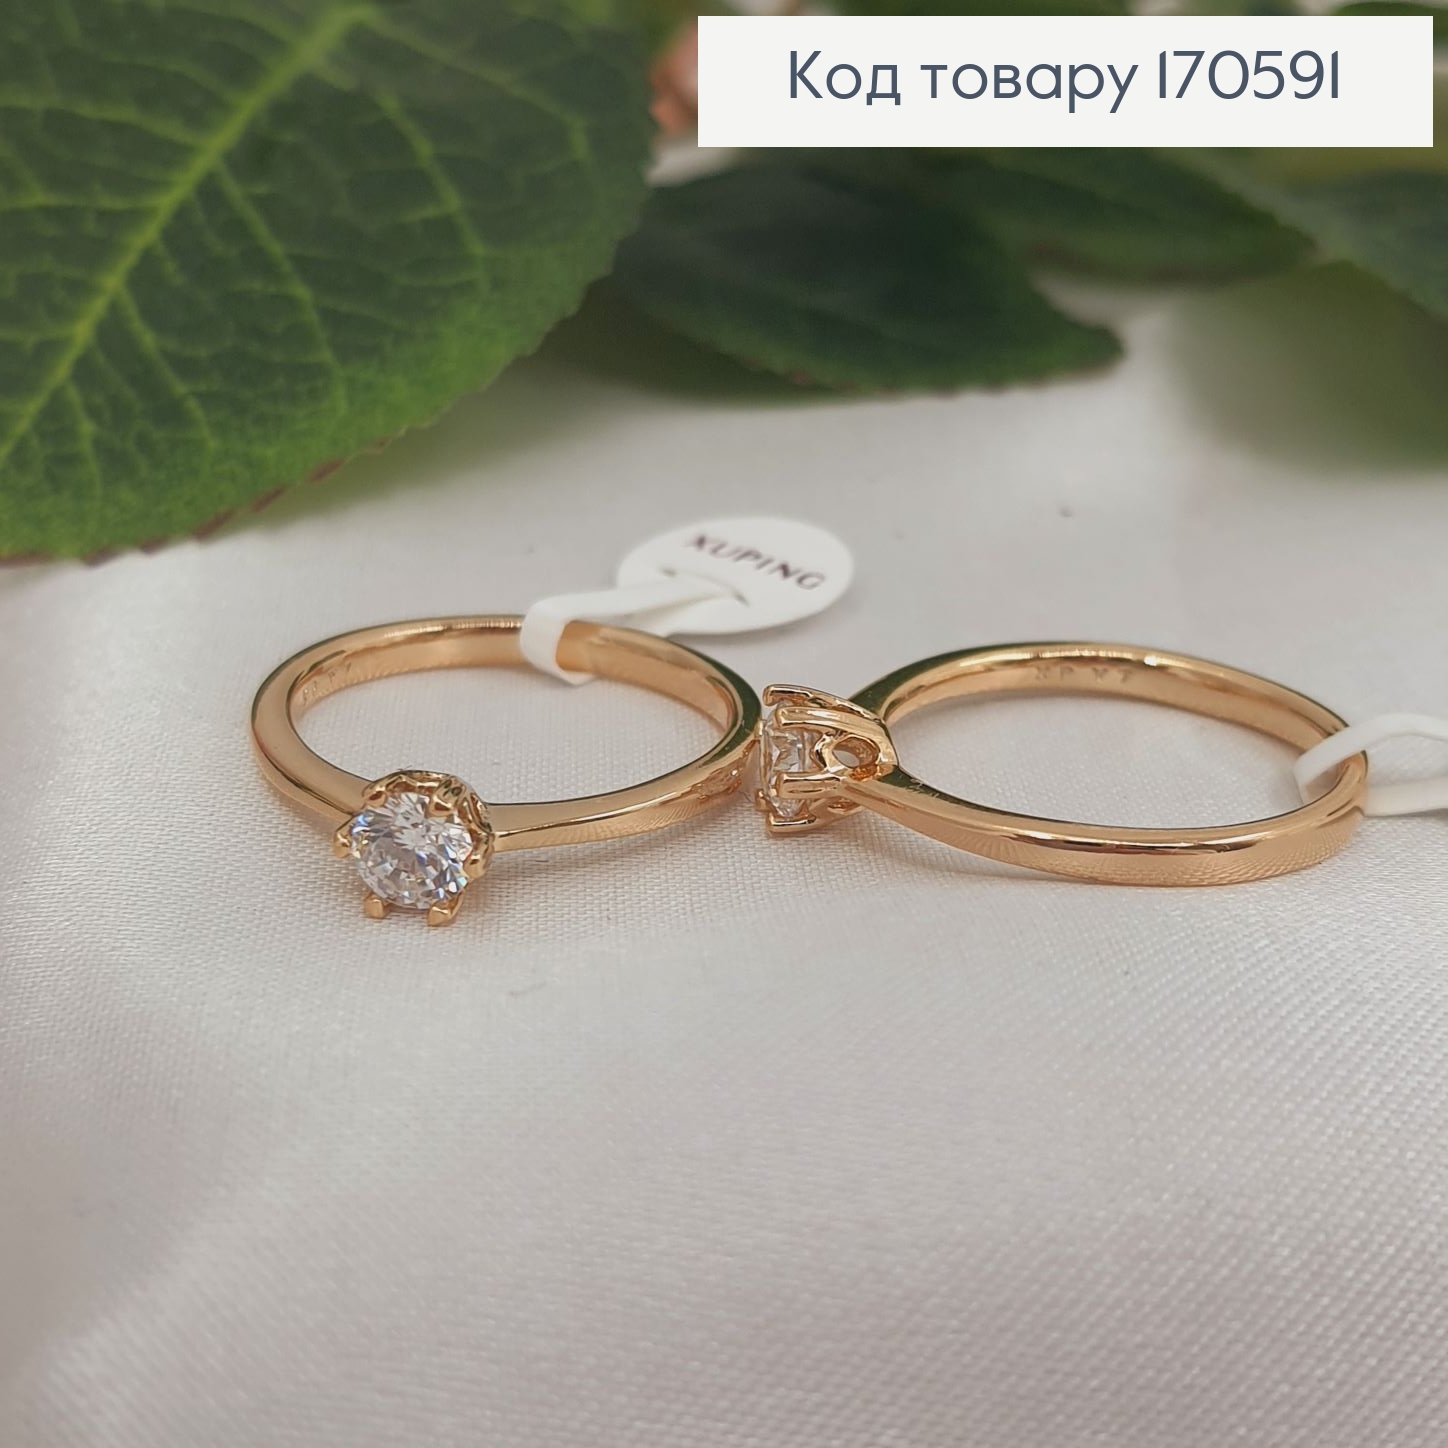 Перстень з одним камінцем, Xuping 18К 170591 фото 2